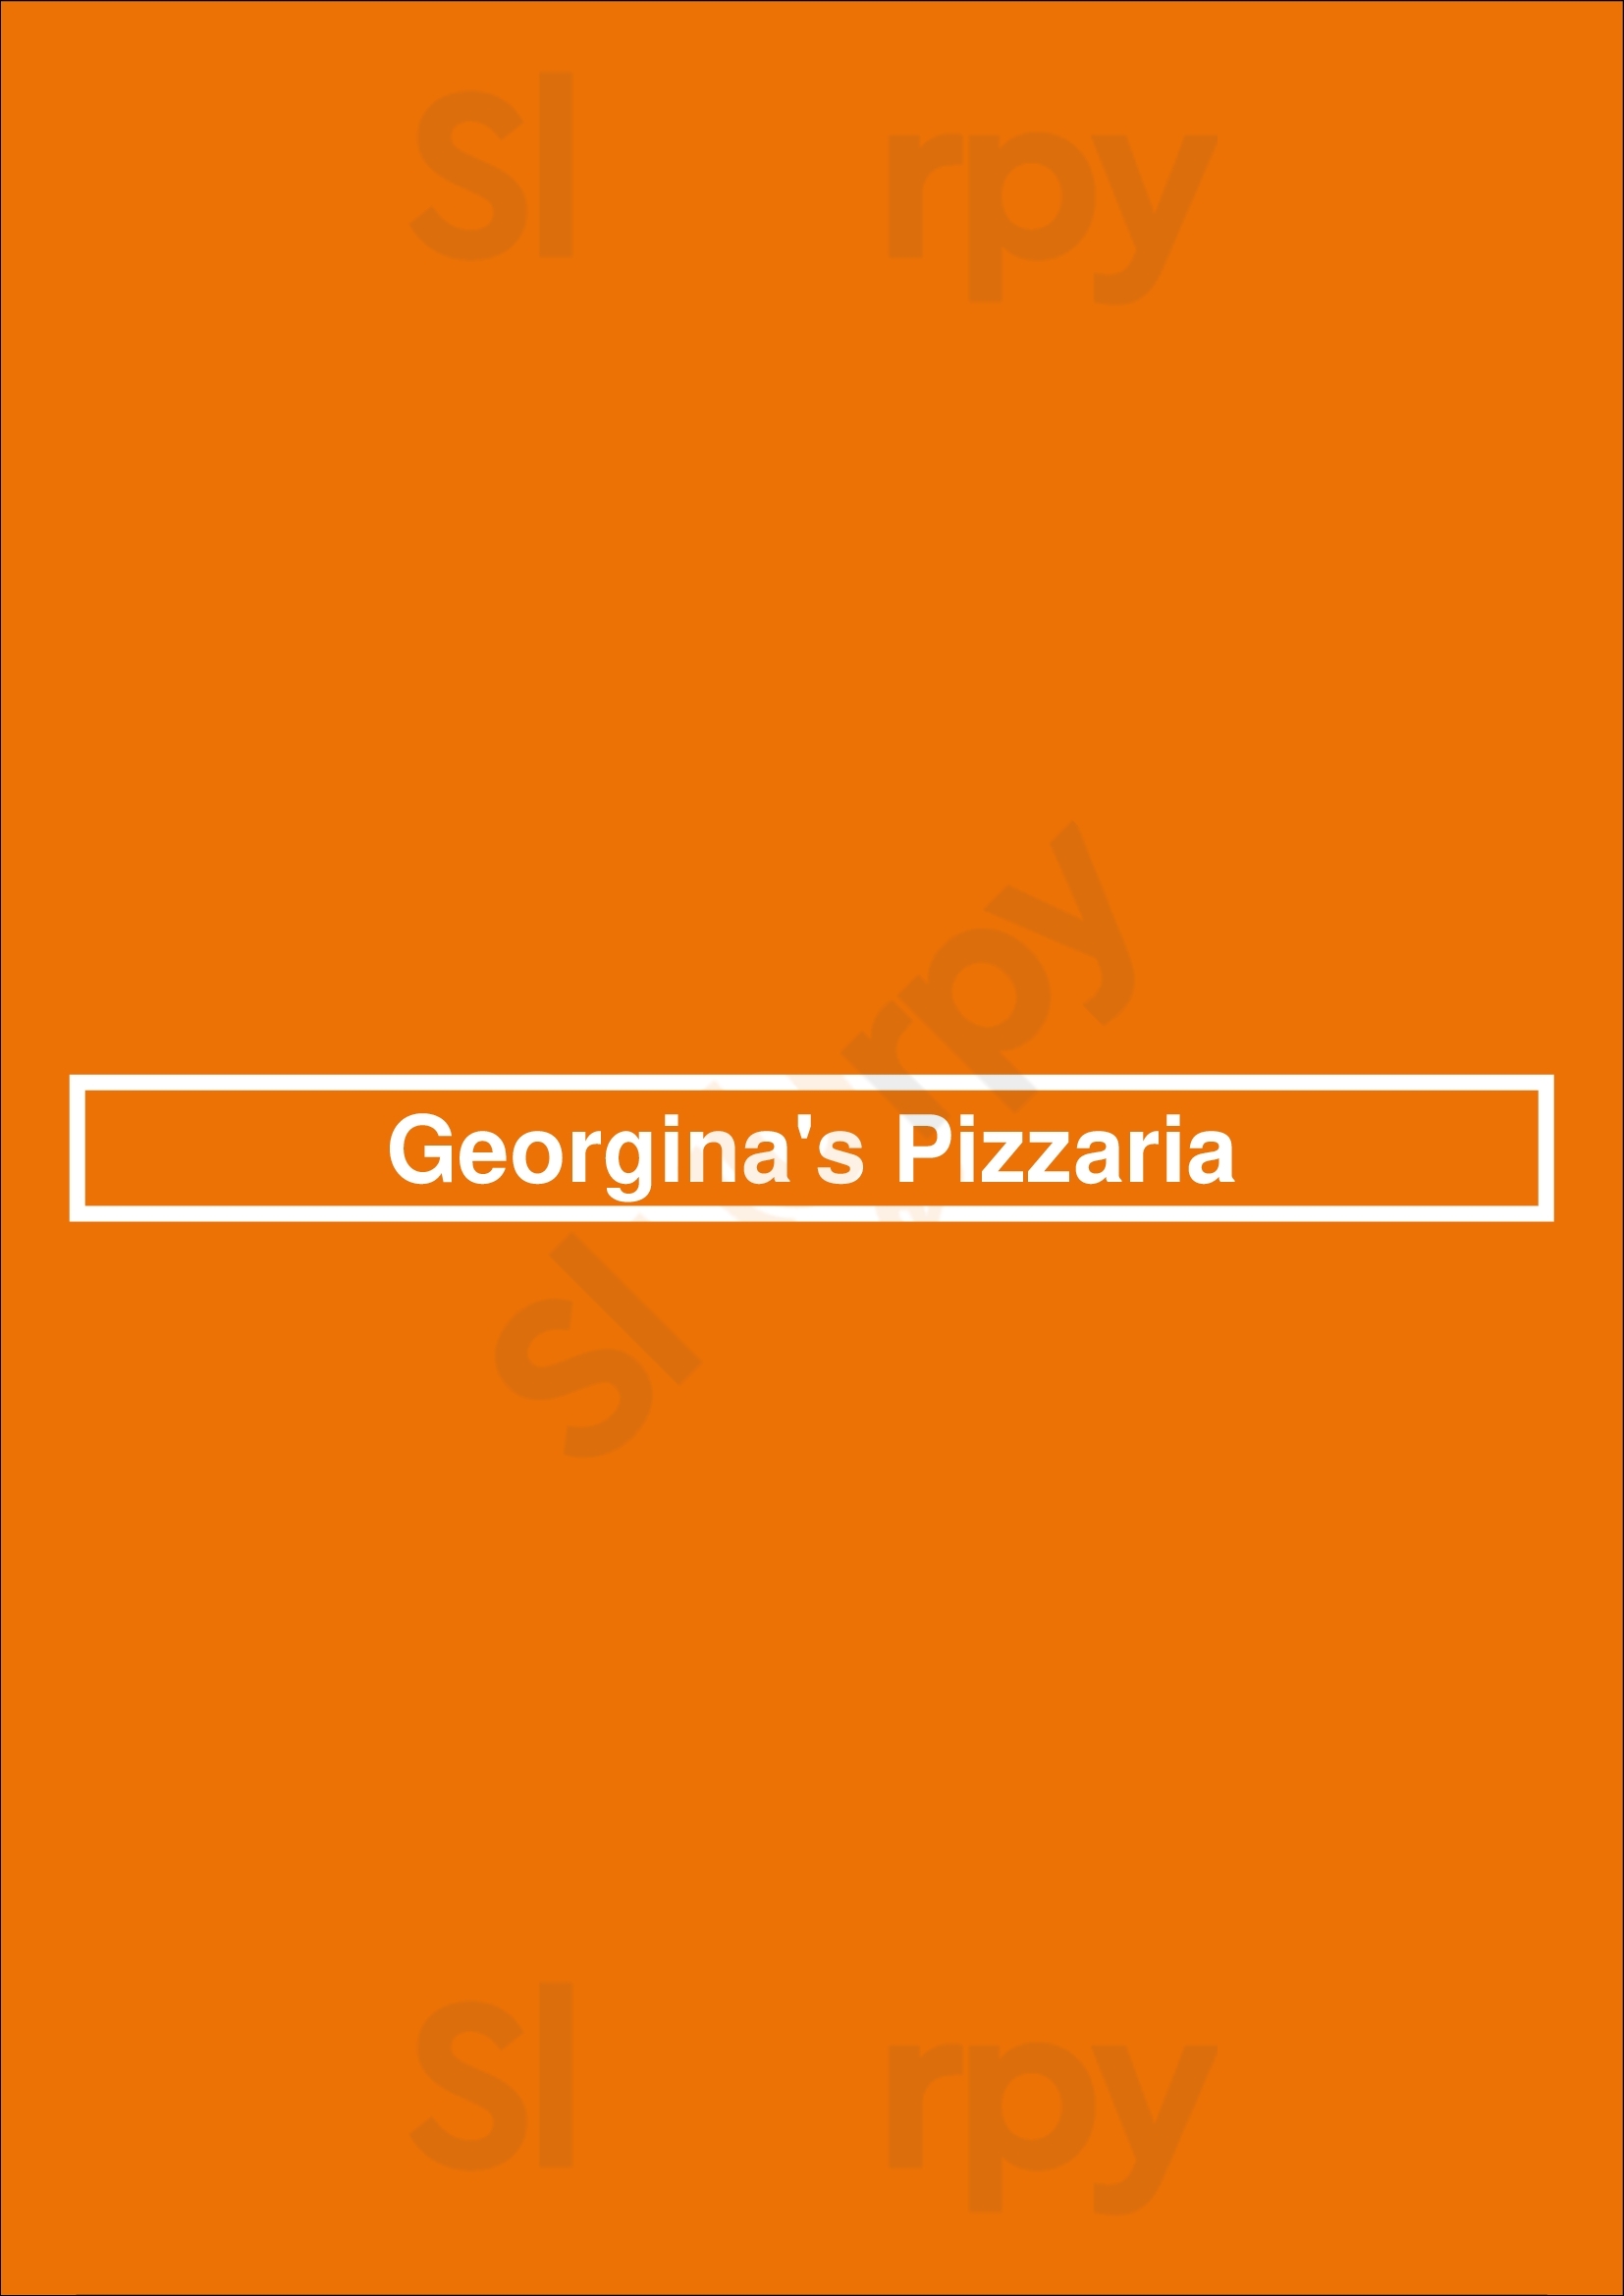 Georgina's Pizzaria Morrisville Menu - 1